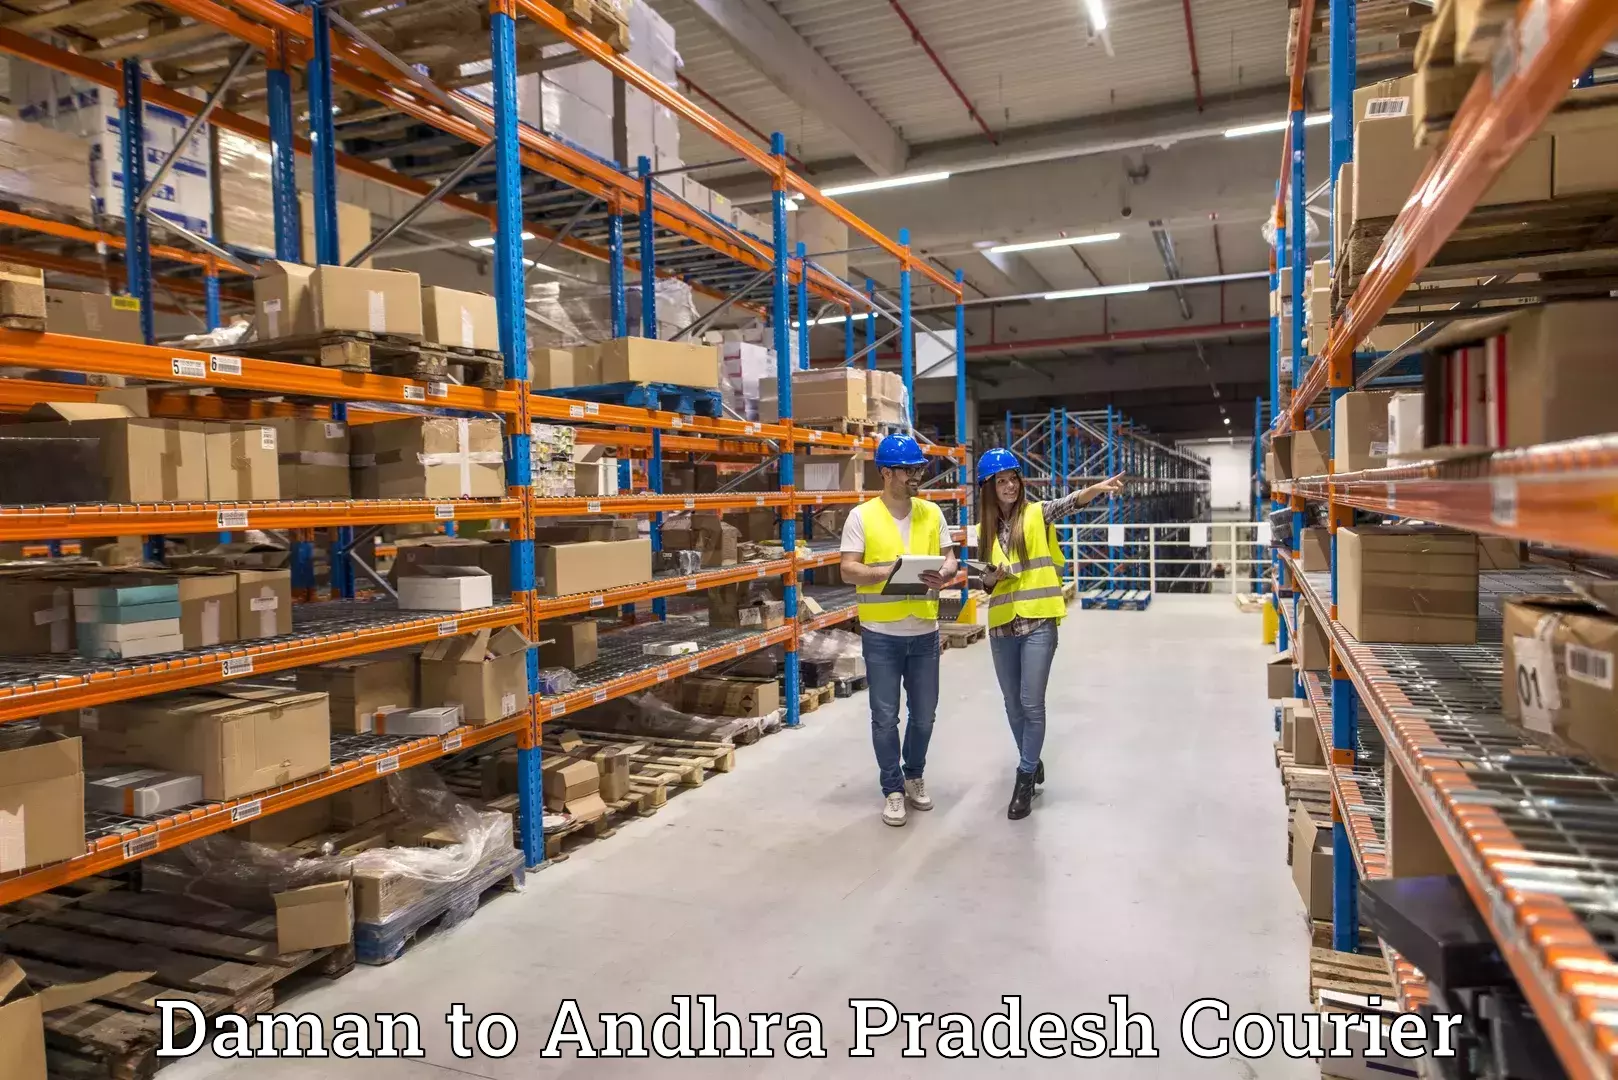 Express courier facilities Daman to Andhra Pradesh